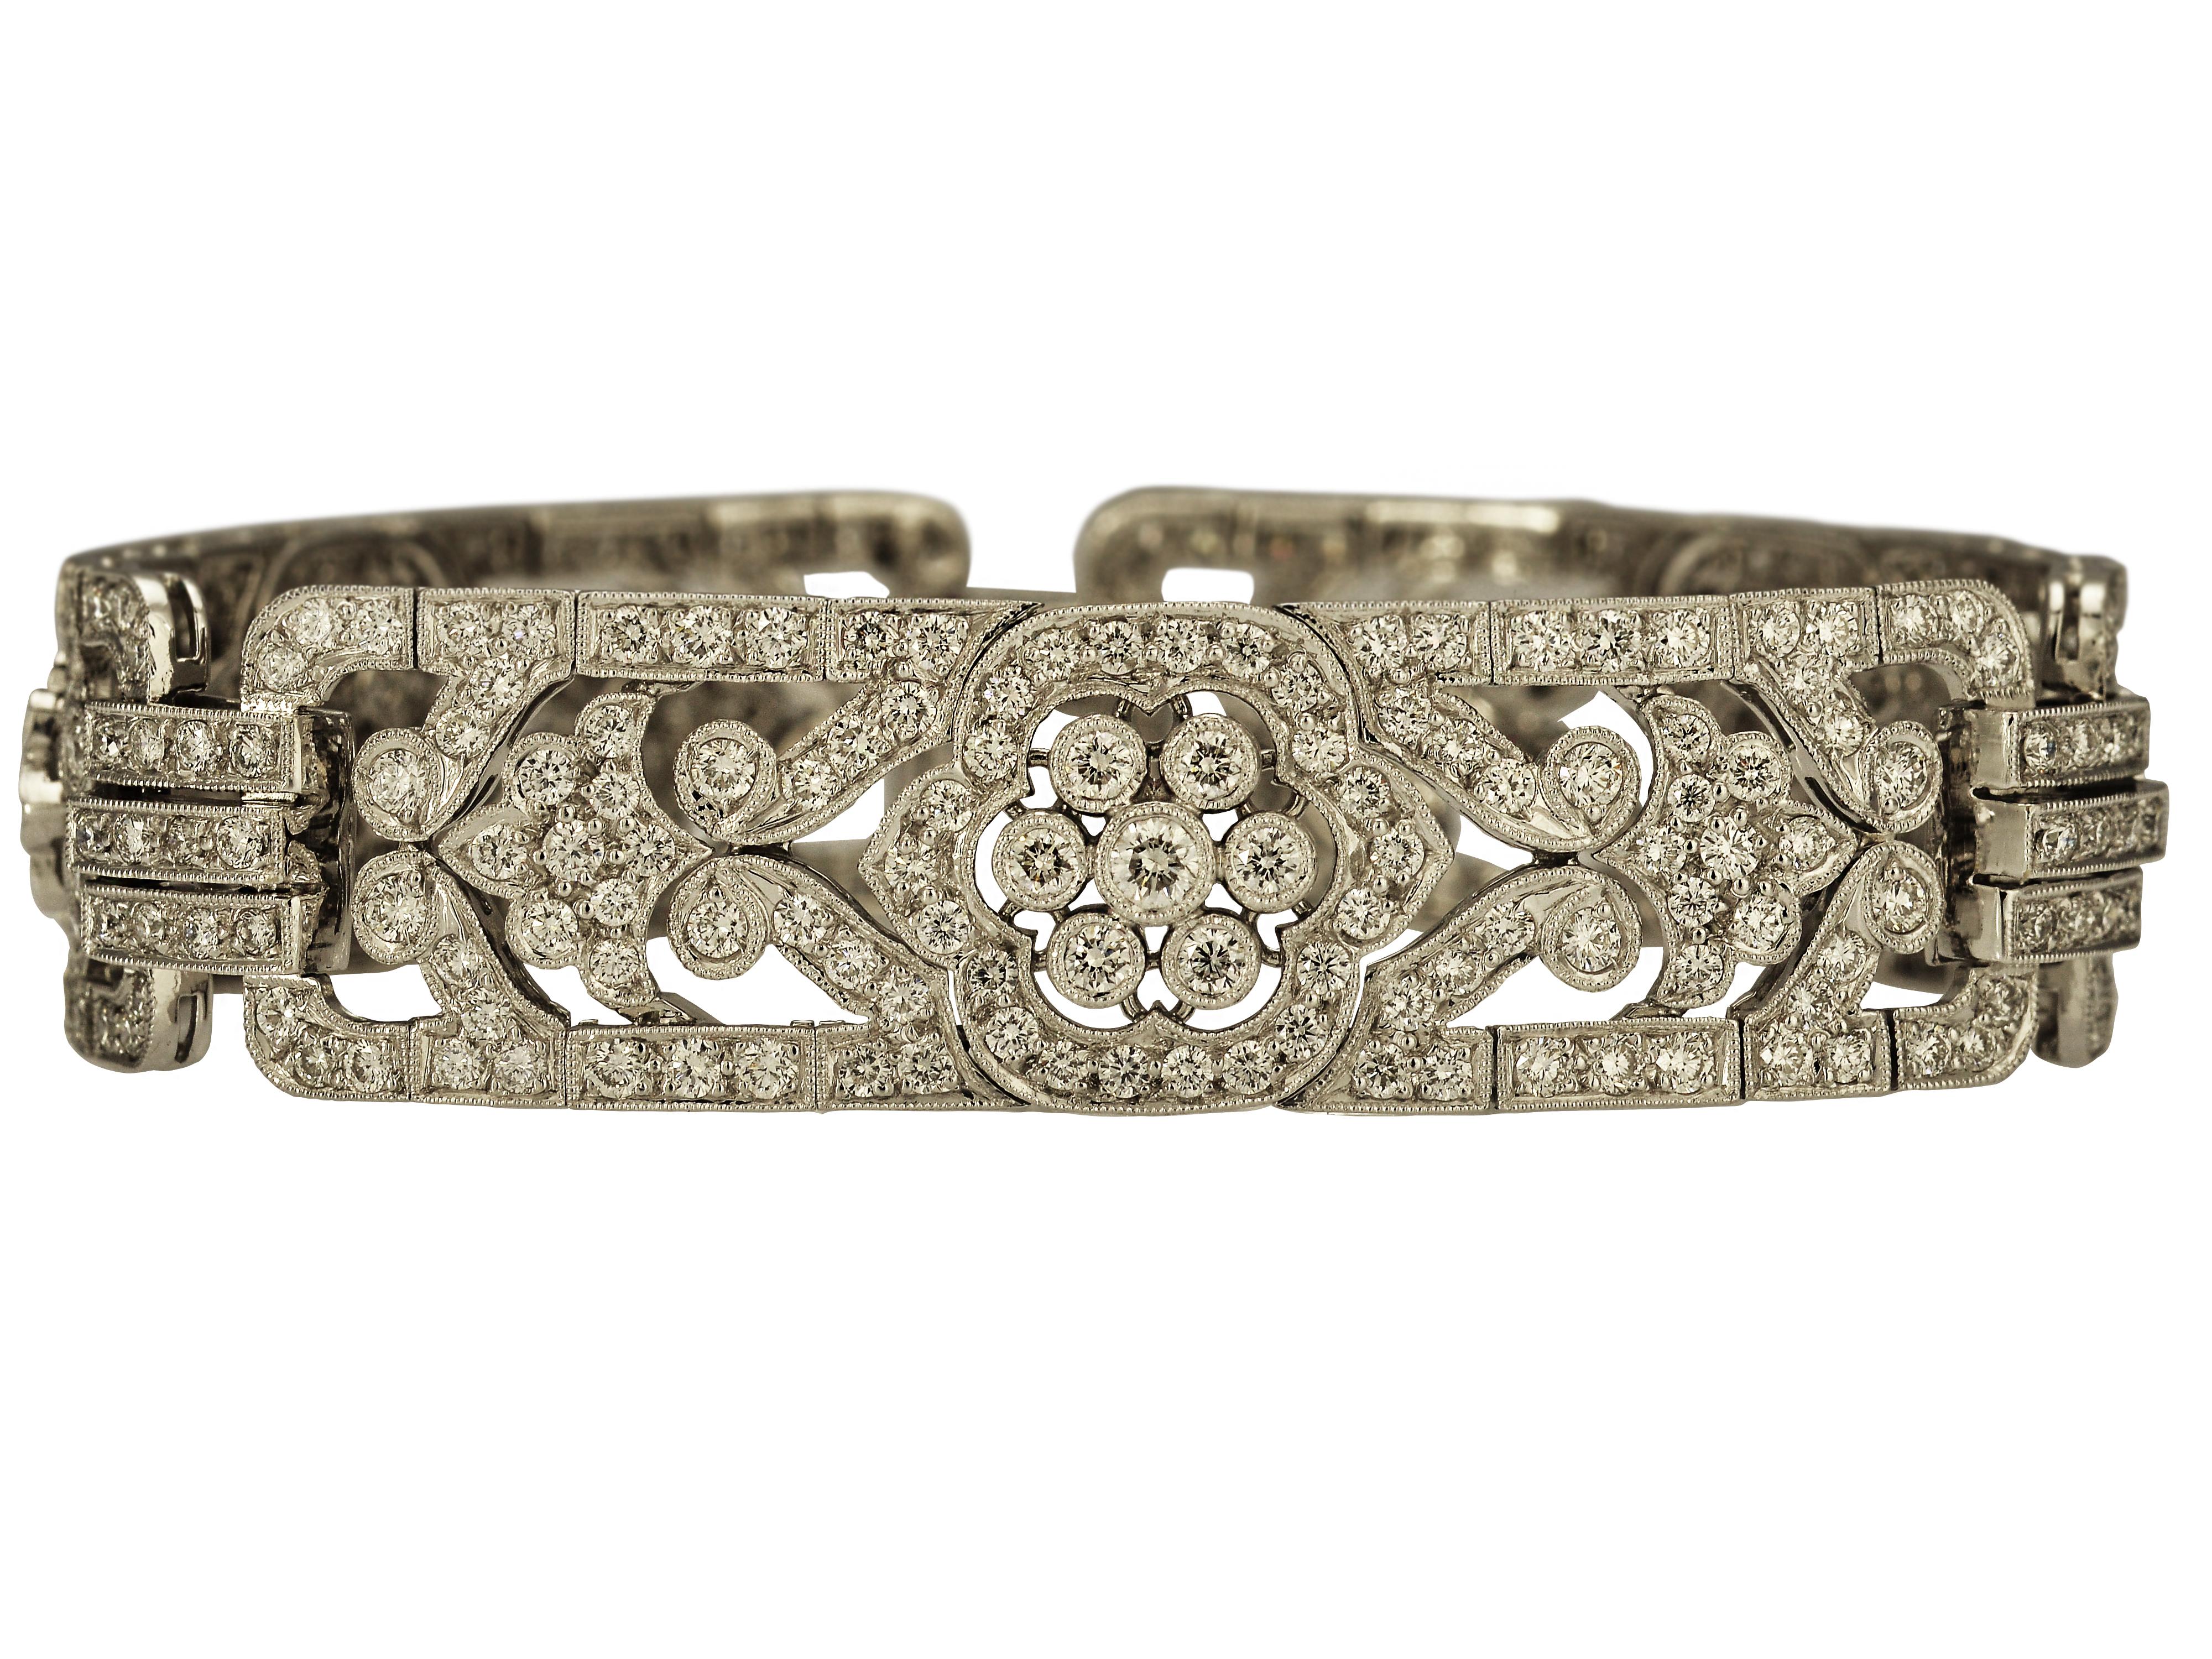 6.86 Carat Diamond Bracelet with Floral Accents 1